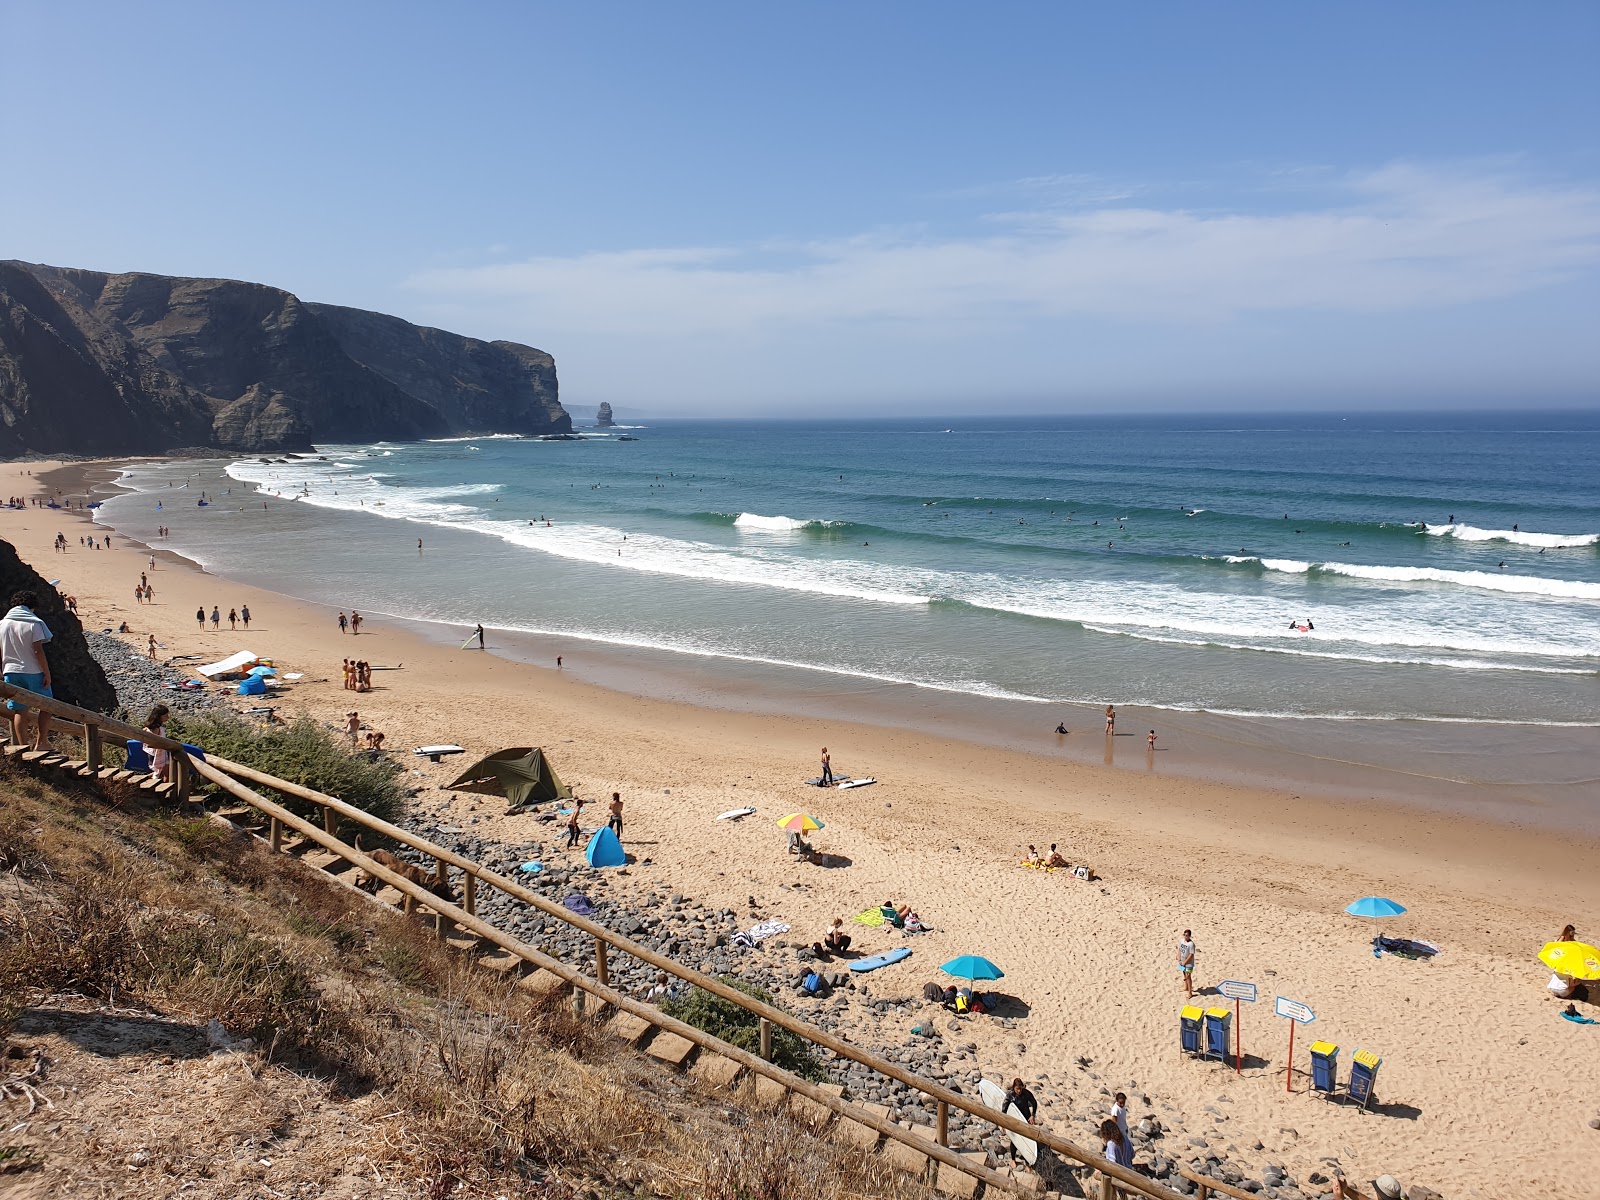 Praia da Arrifana'in fotoğrafı parlak ince kum yüzey ile